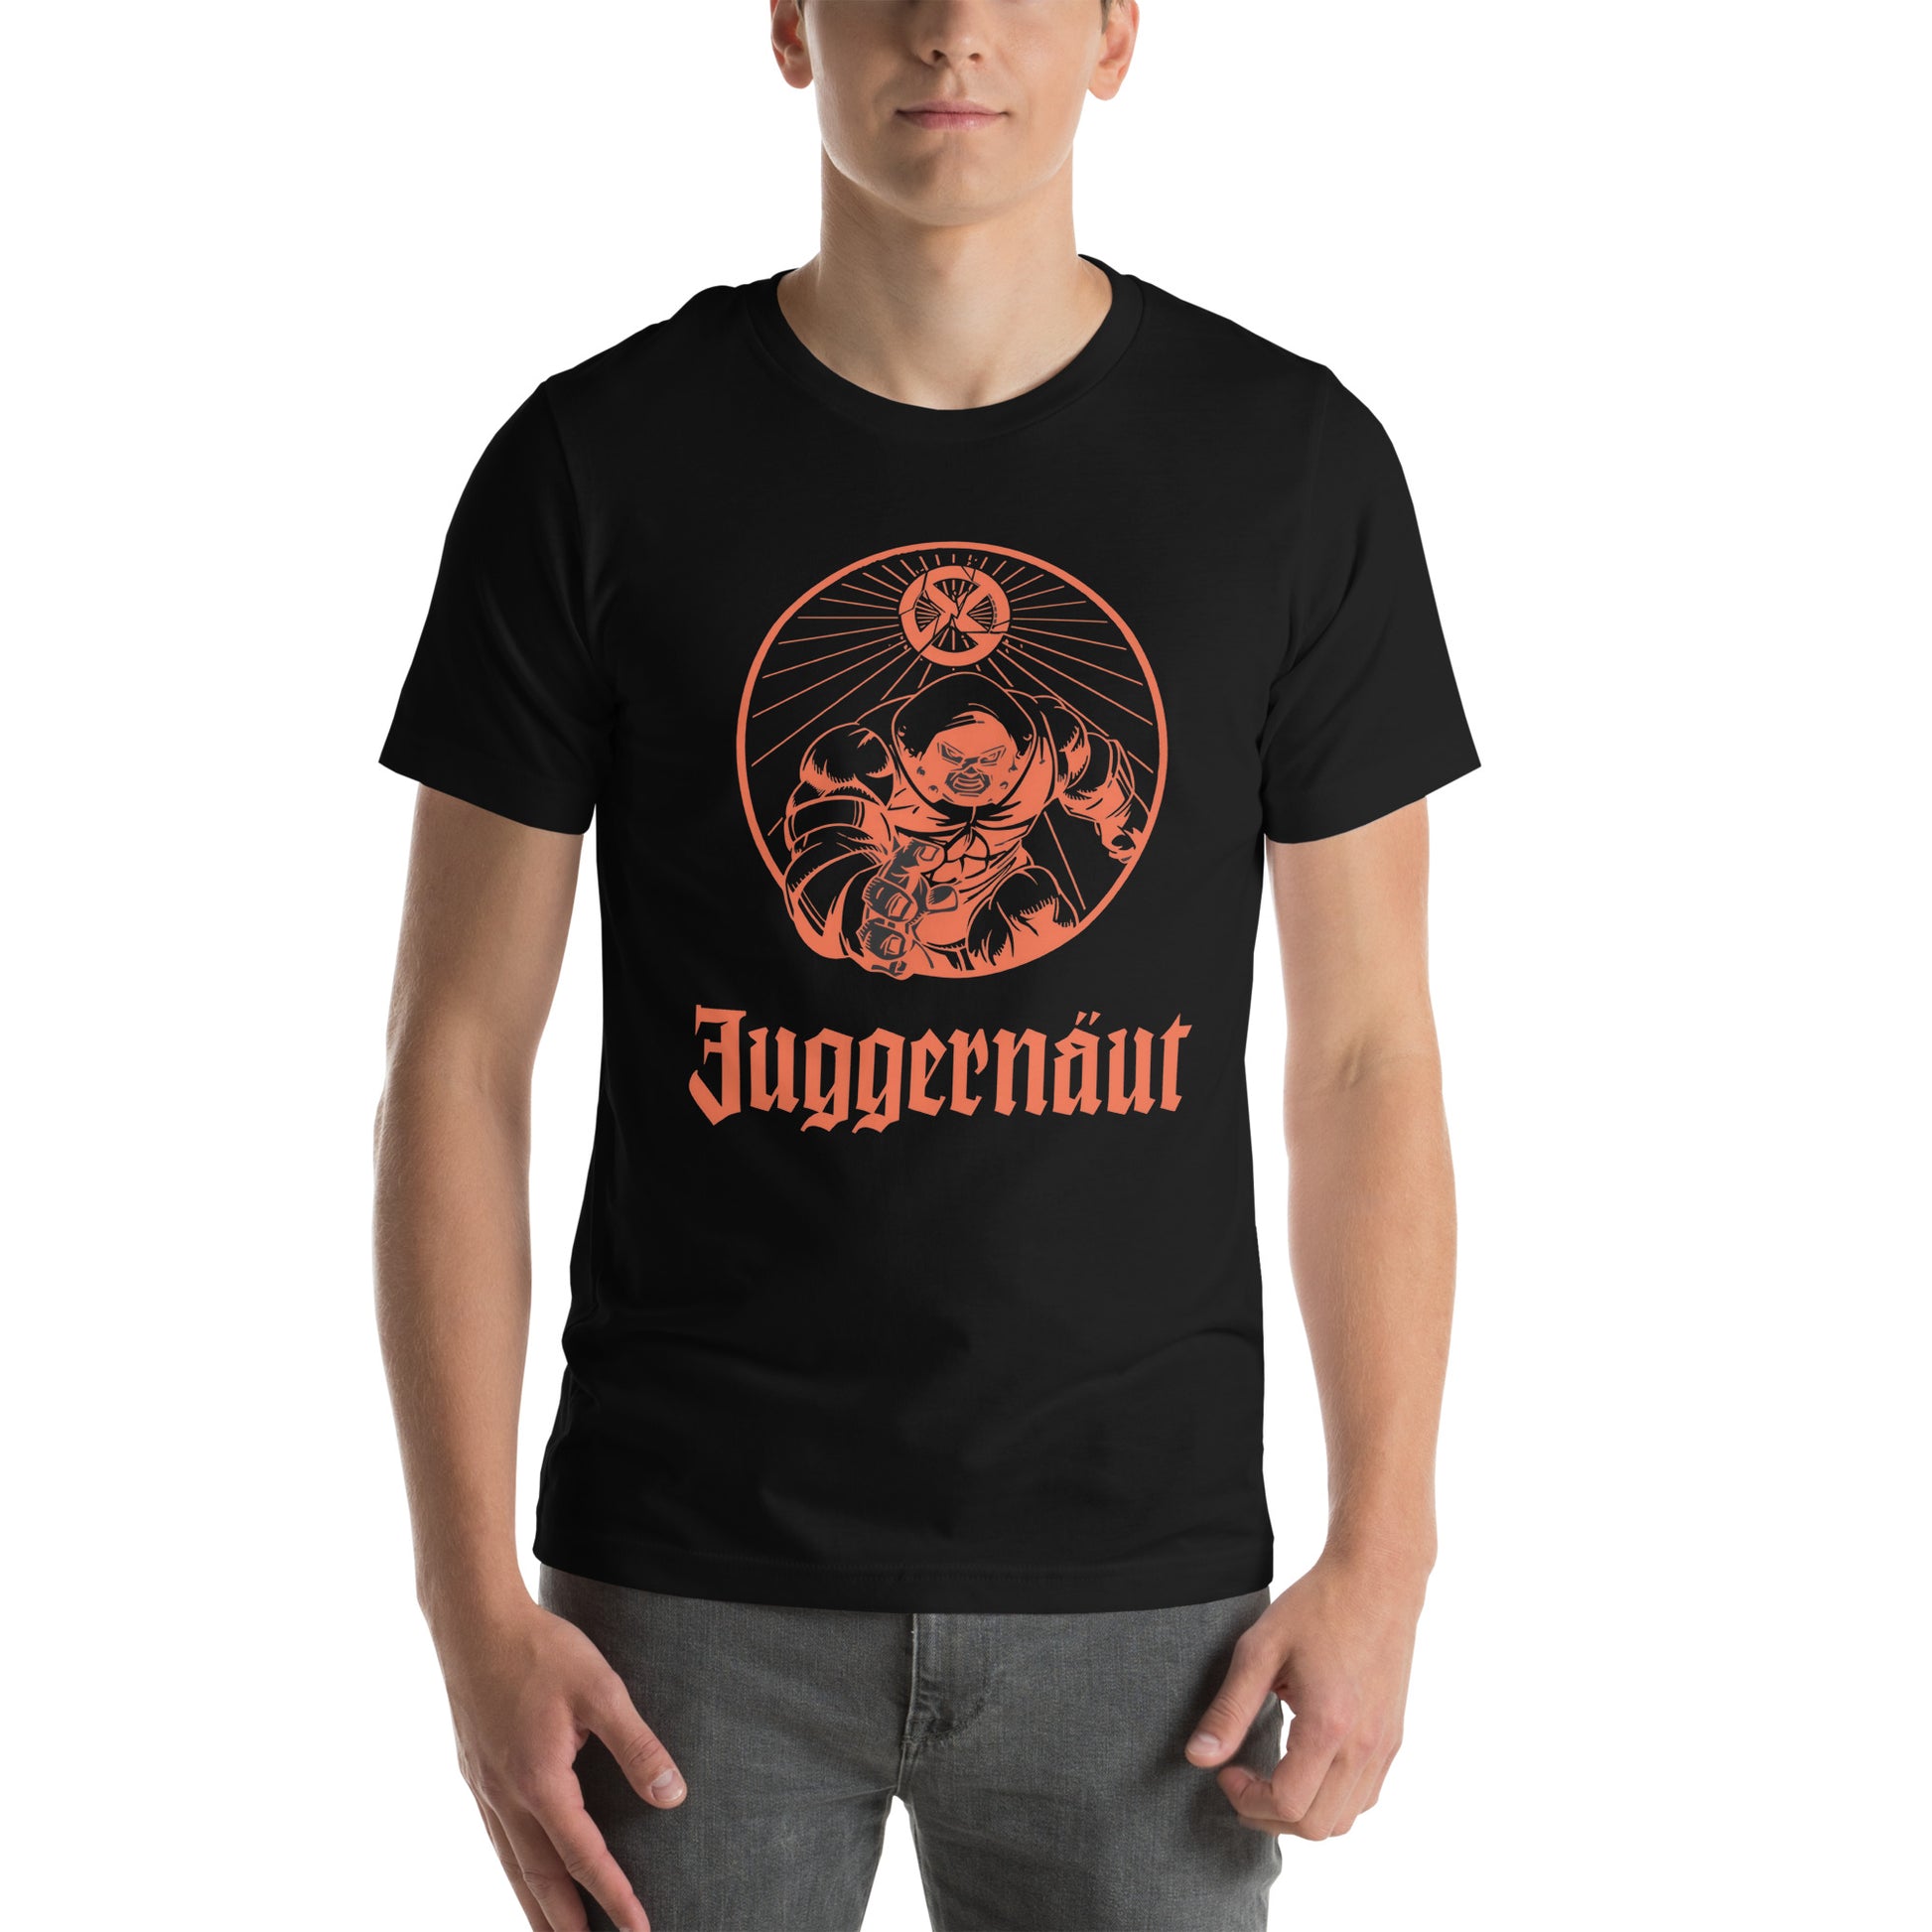 Camiseta Juggernaut, Disponible en la mejor tienda online para comprar tu merch favorita, la mejor Calidad, compra Ahora en Superstar! 